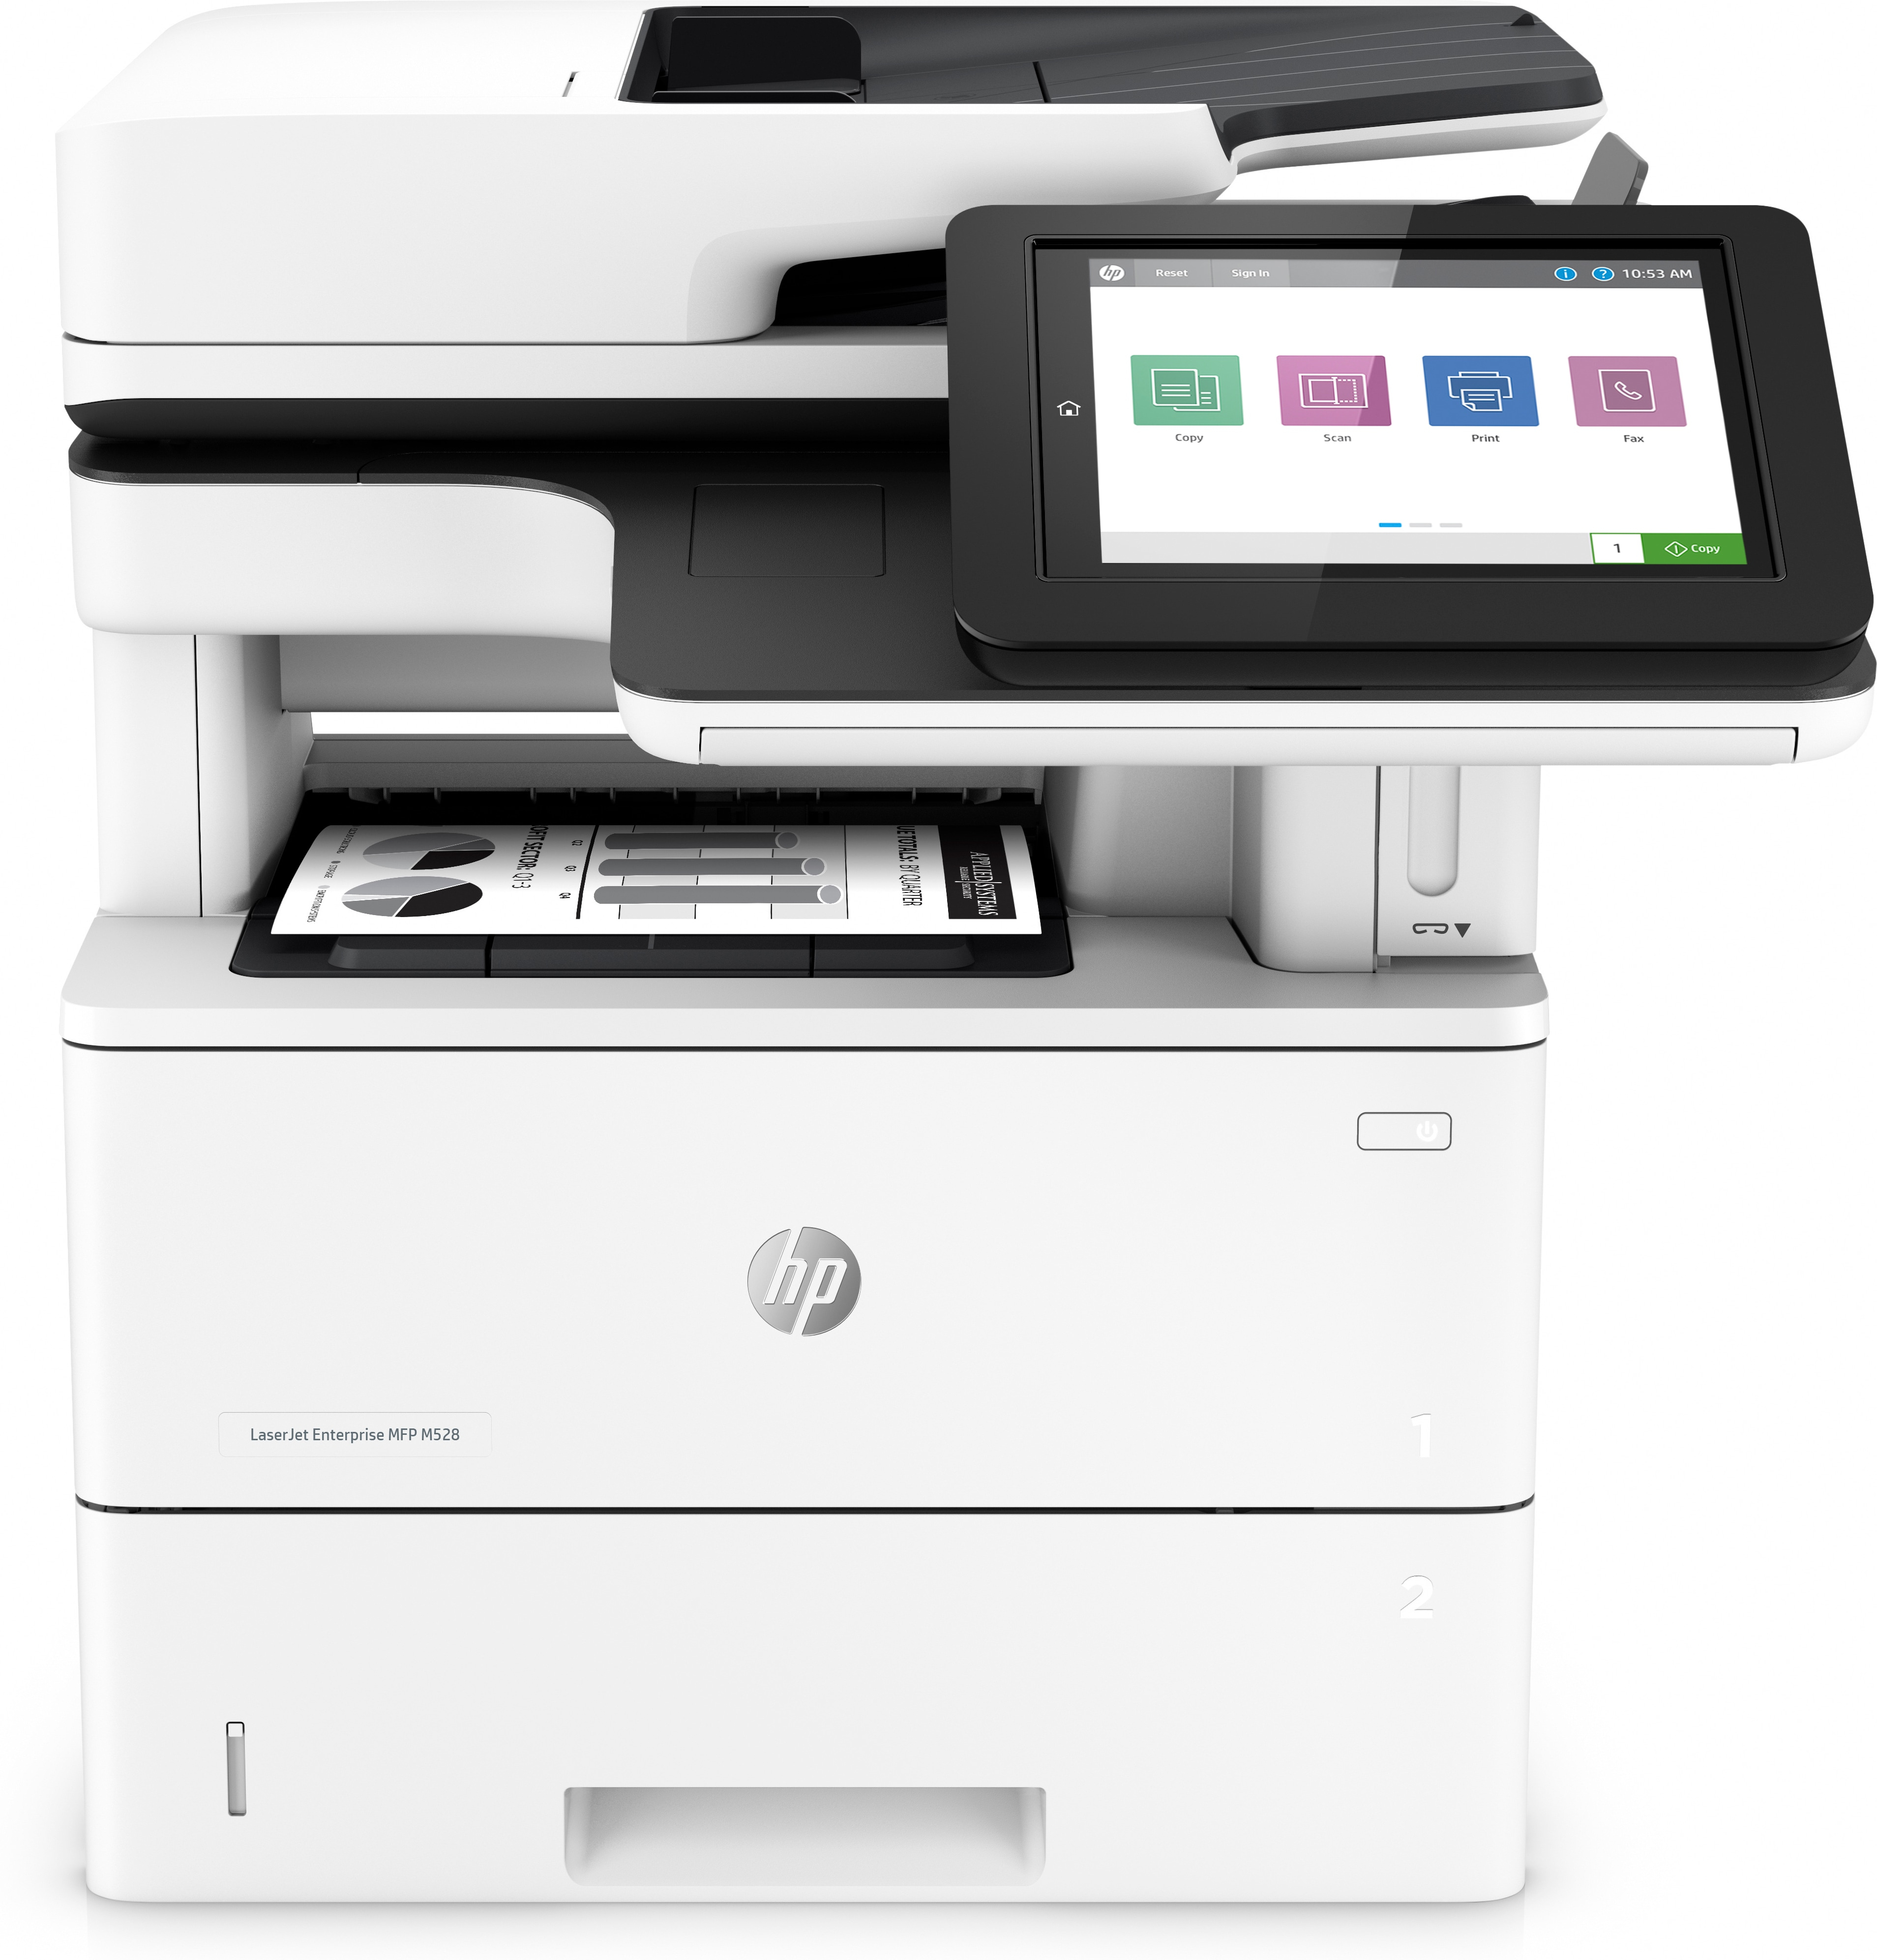 HP LaserJet Enterprise MFP M528f - Multifunktionsdrucker - s/w - Laser - Legal (216 x 356 mm)